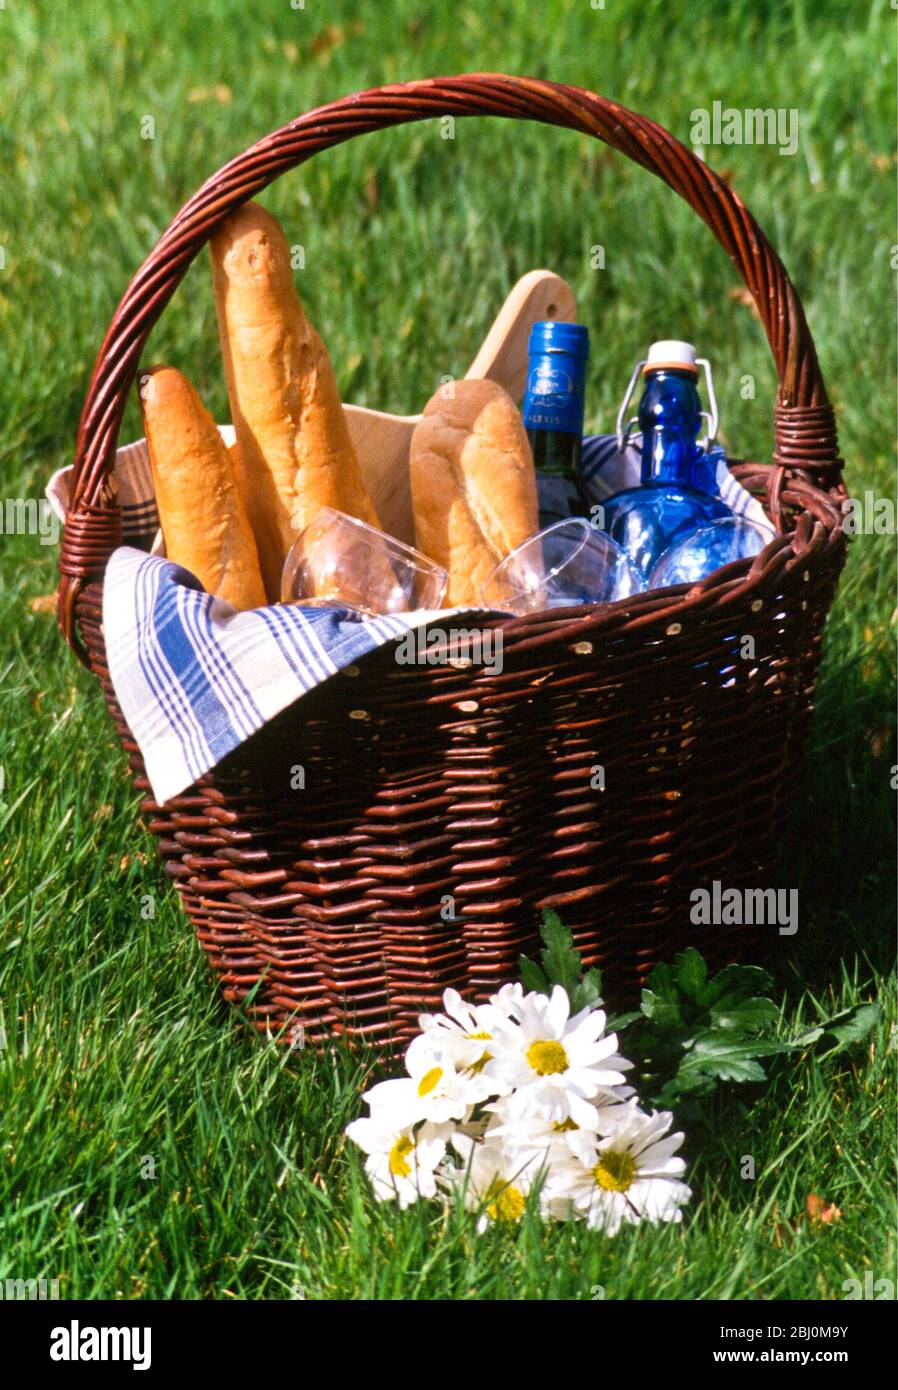 Cestino da picnic con pane francese, bicchieri e bottiglie seduti sull'erba con mazzo di margherite - Foto Stock